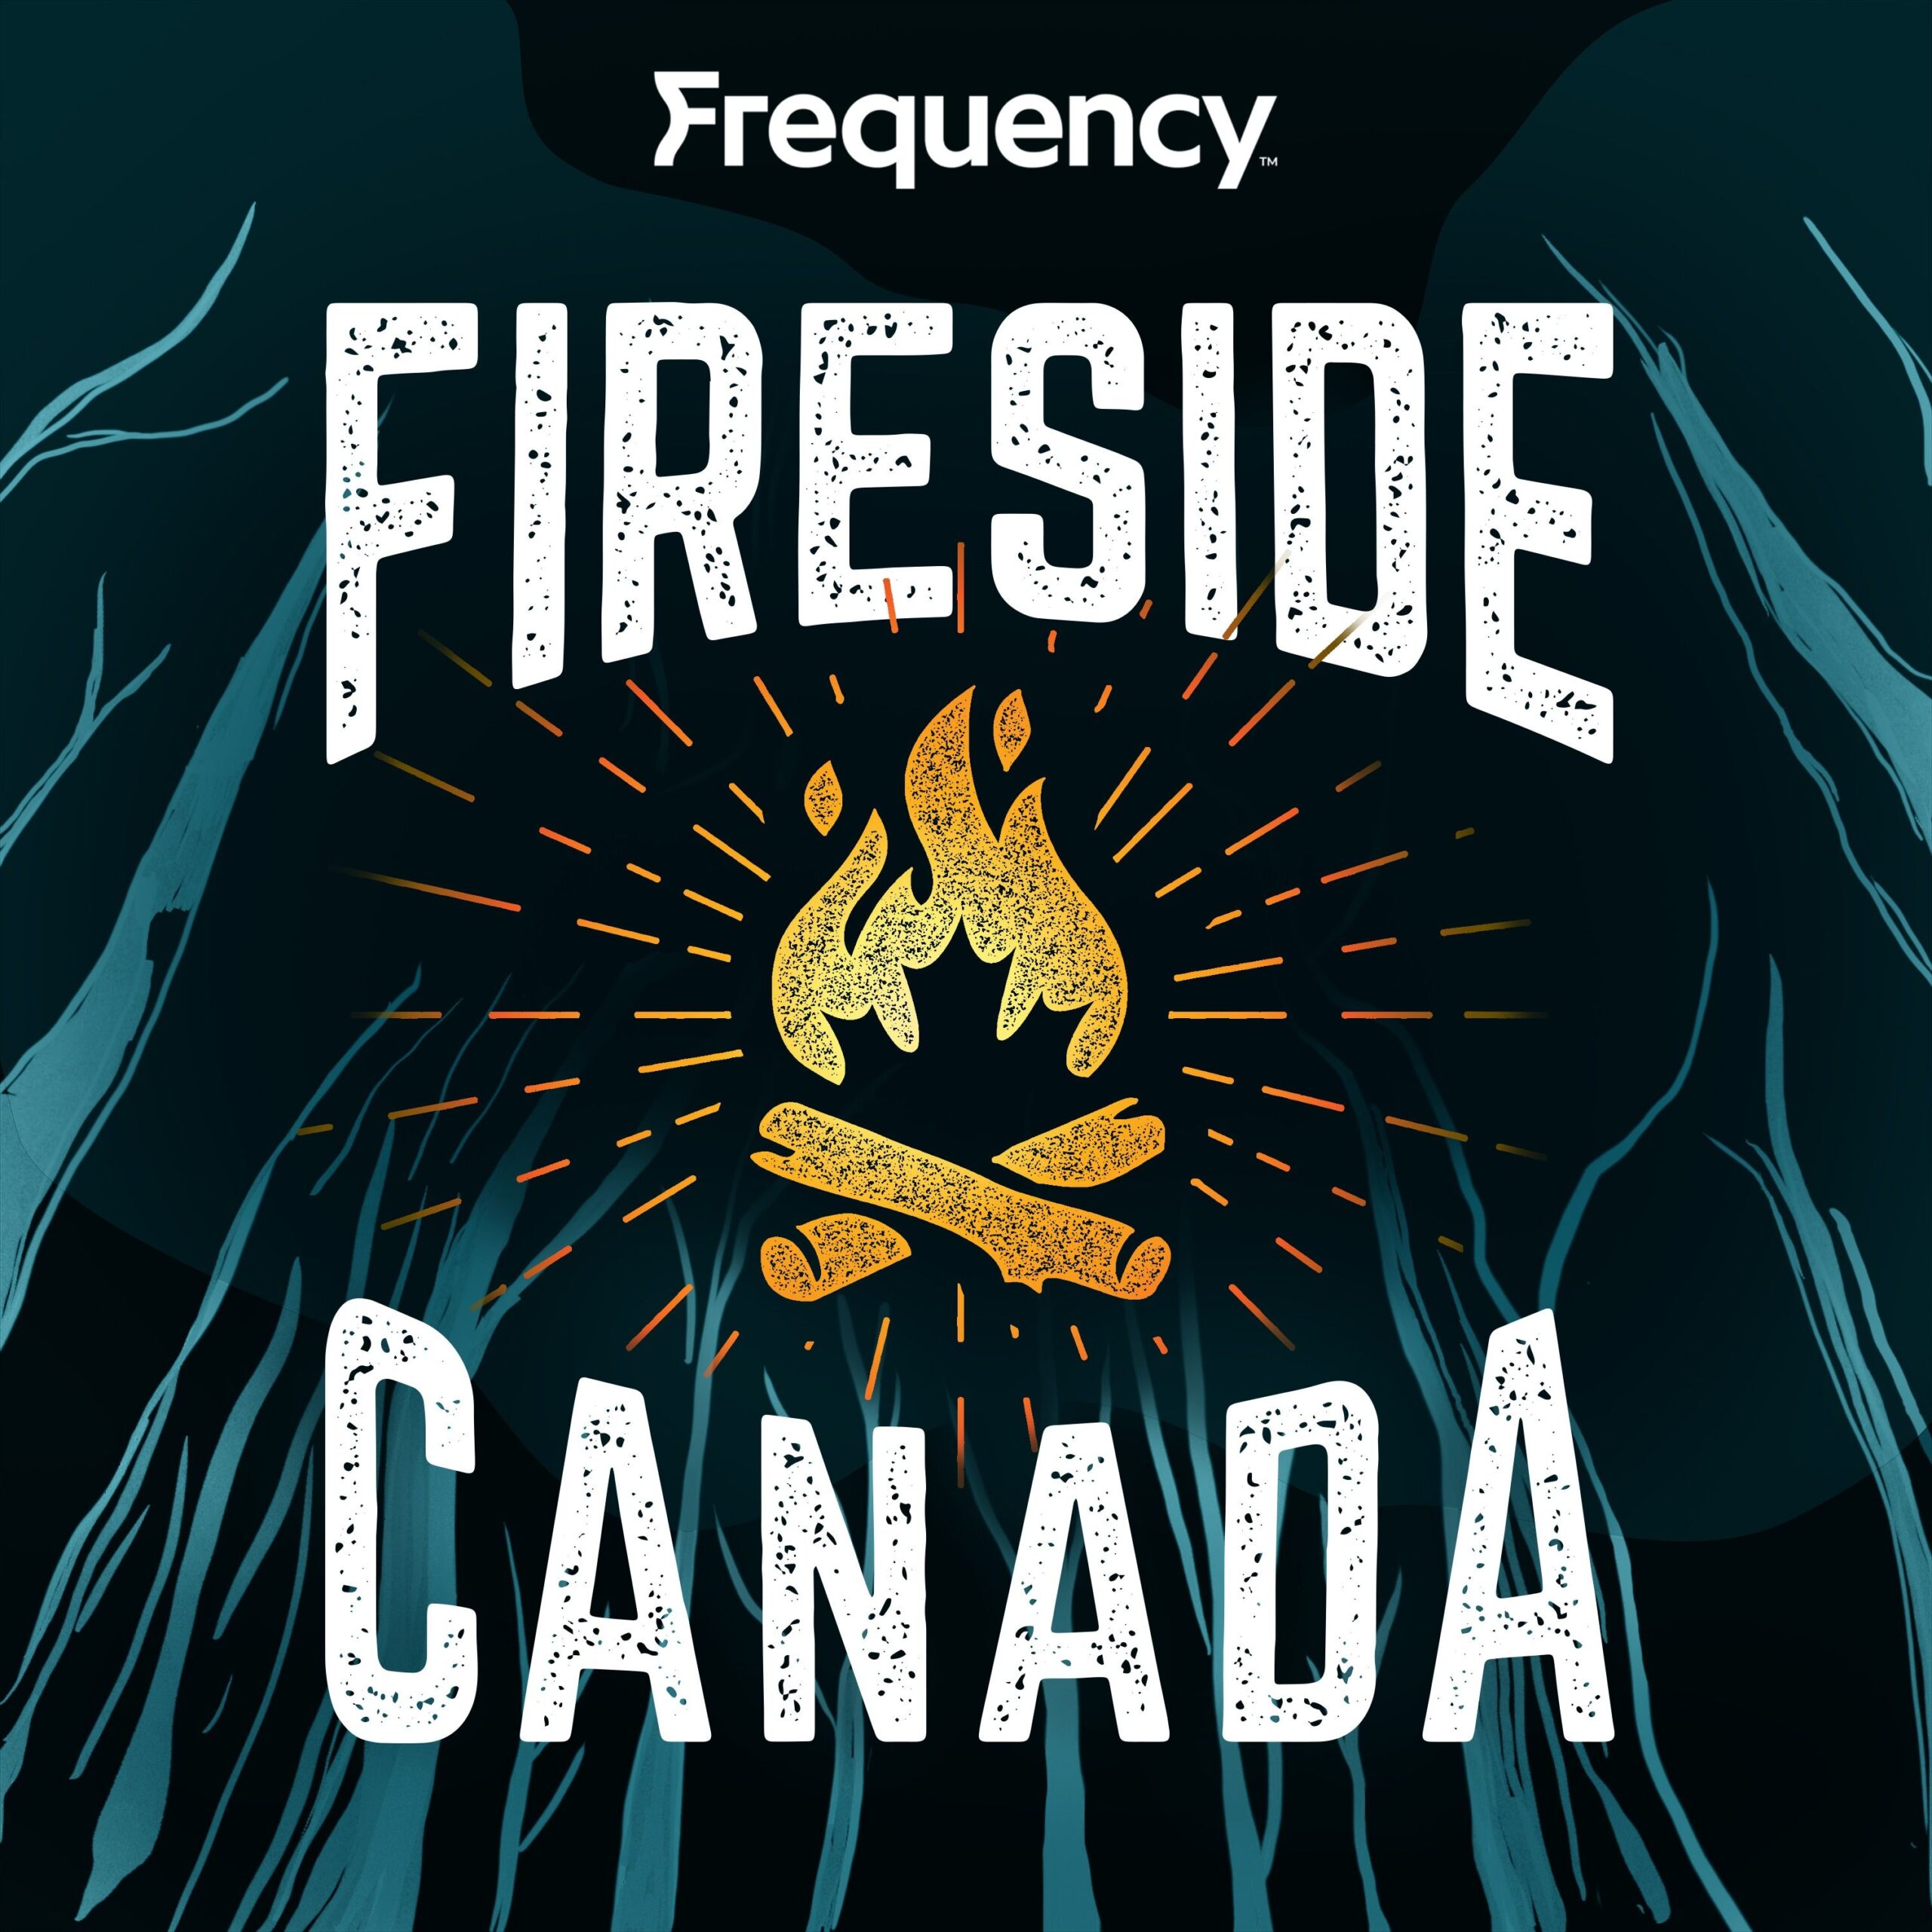 Fireside Canada